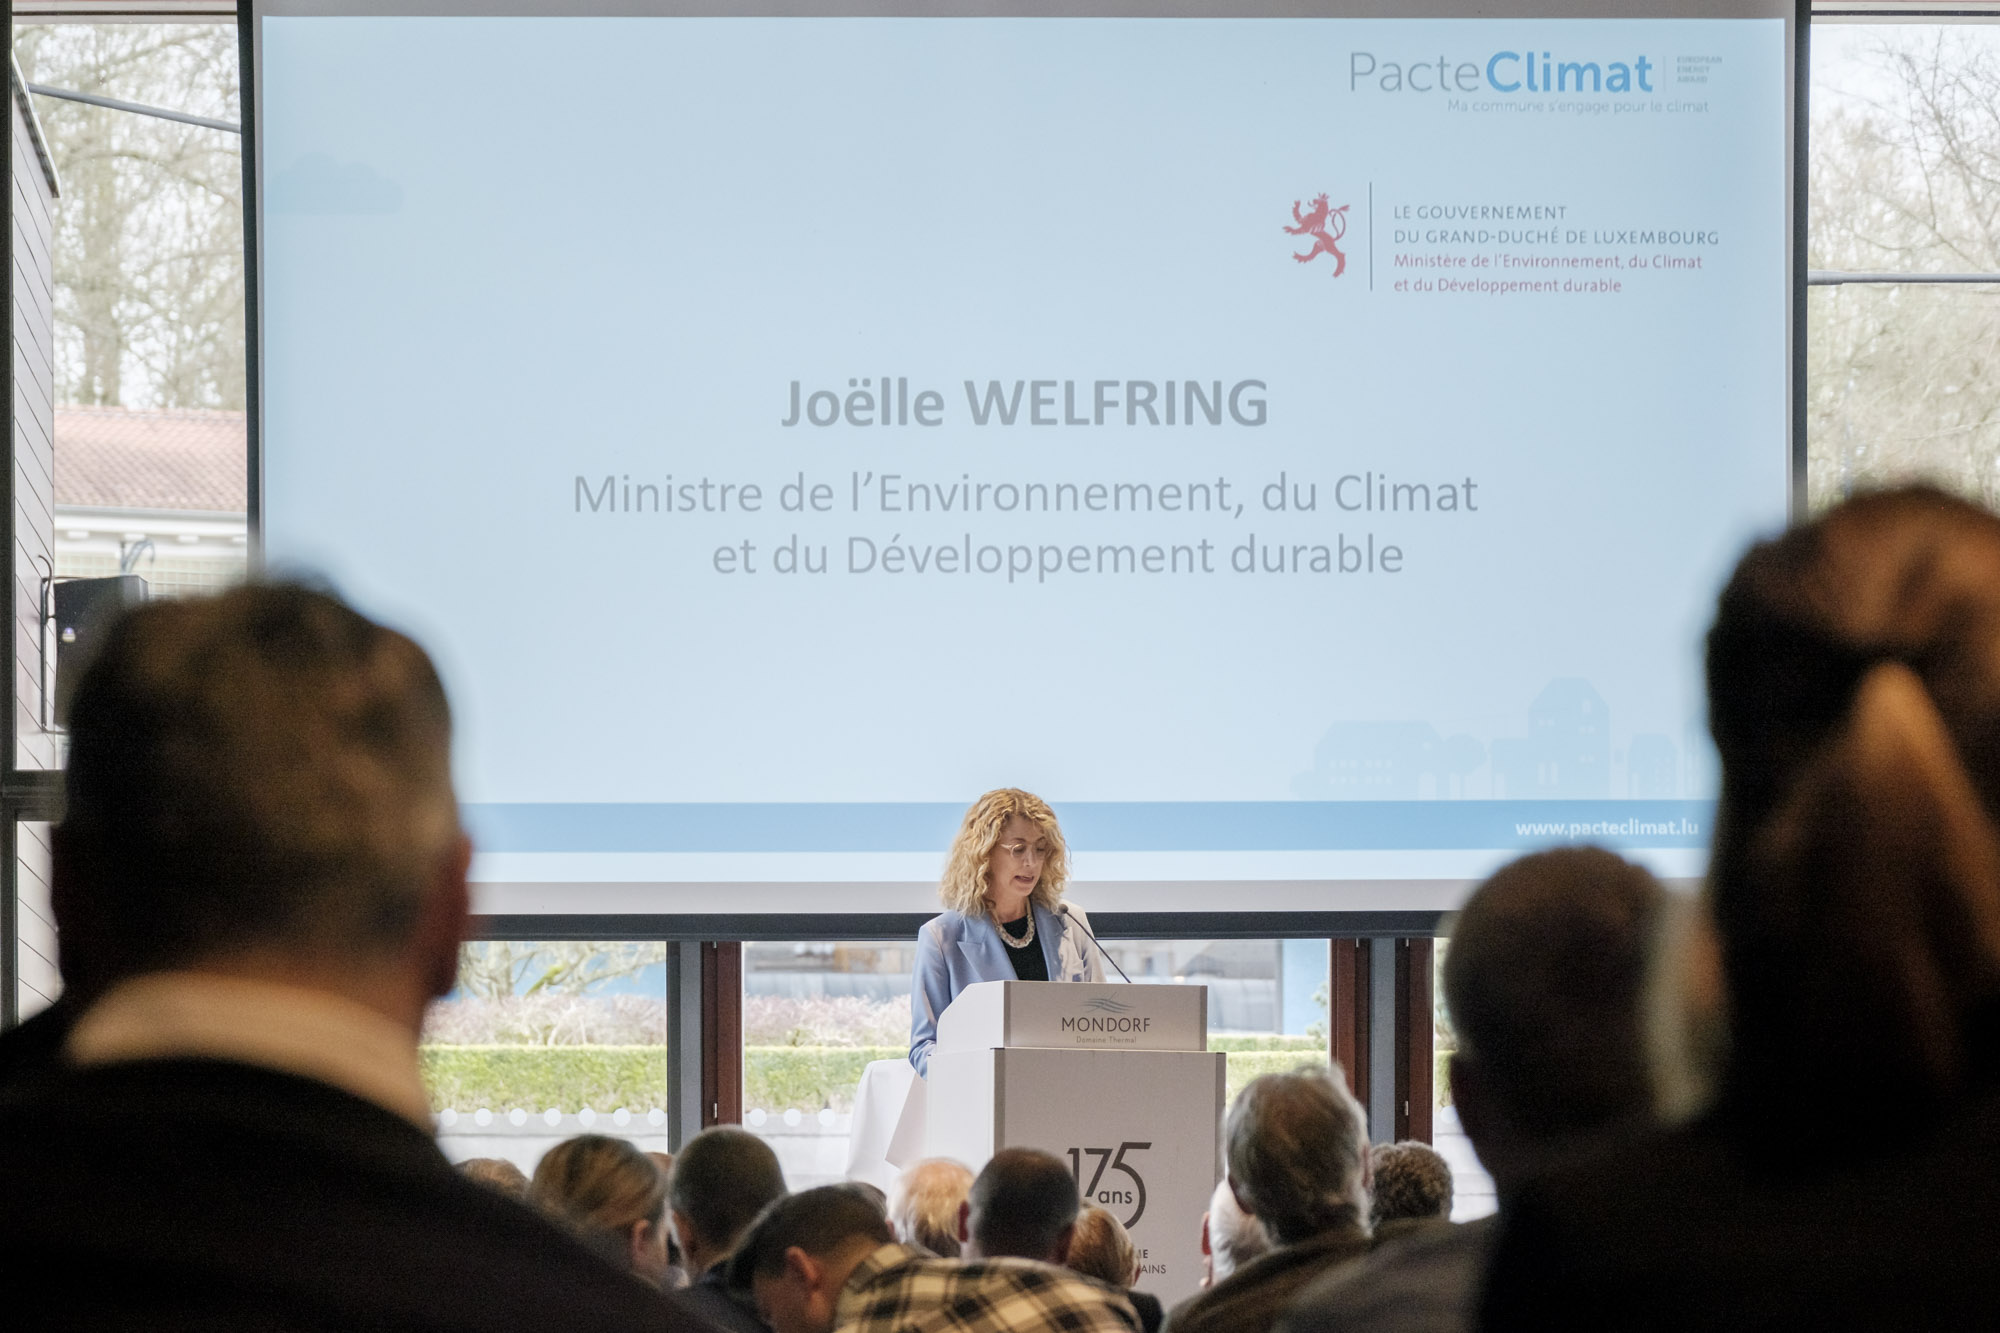 Klimapakt-Dag 2023 en présence de Joëlle Welfring, Ministre de l'Environnement, du Climat et du Développement durable